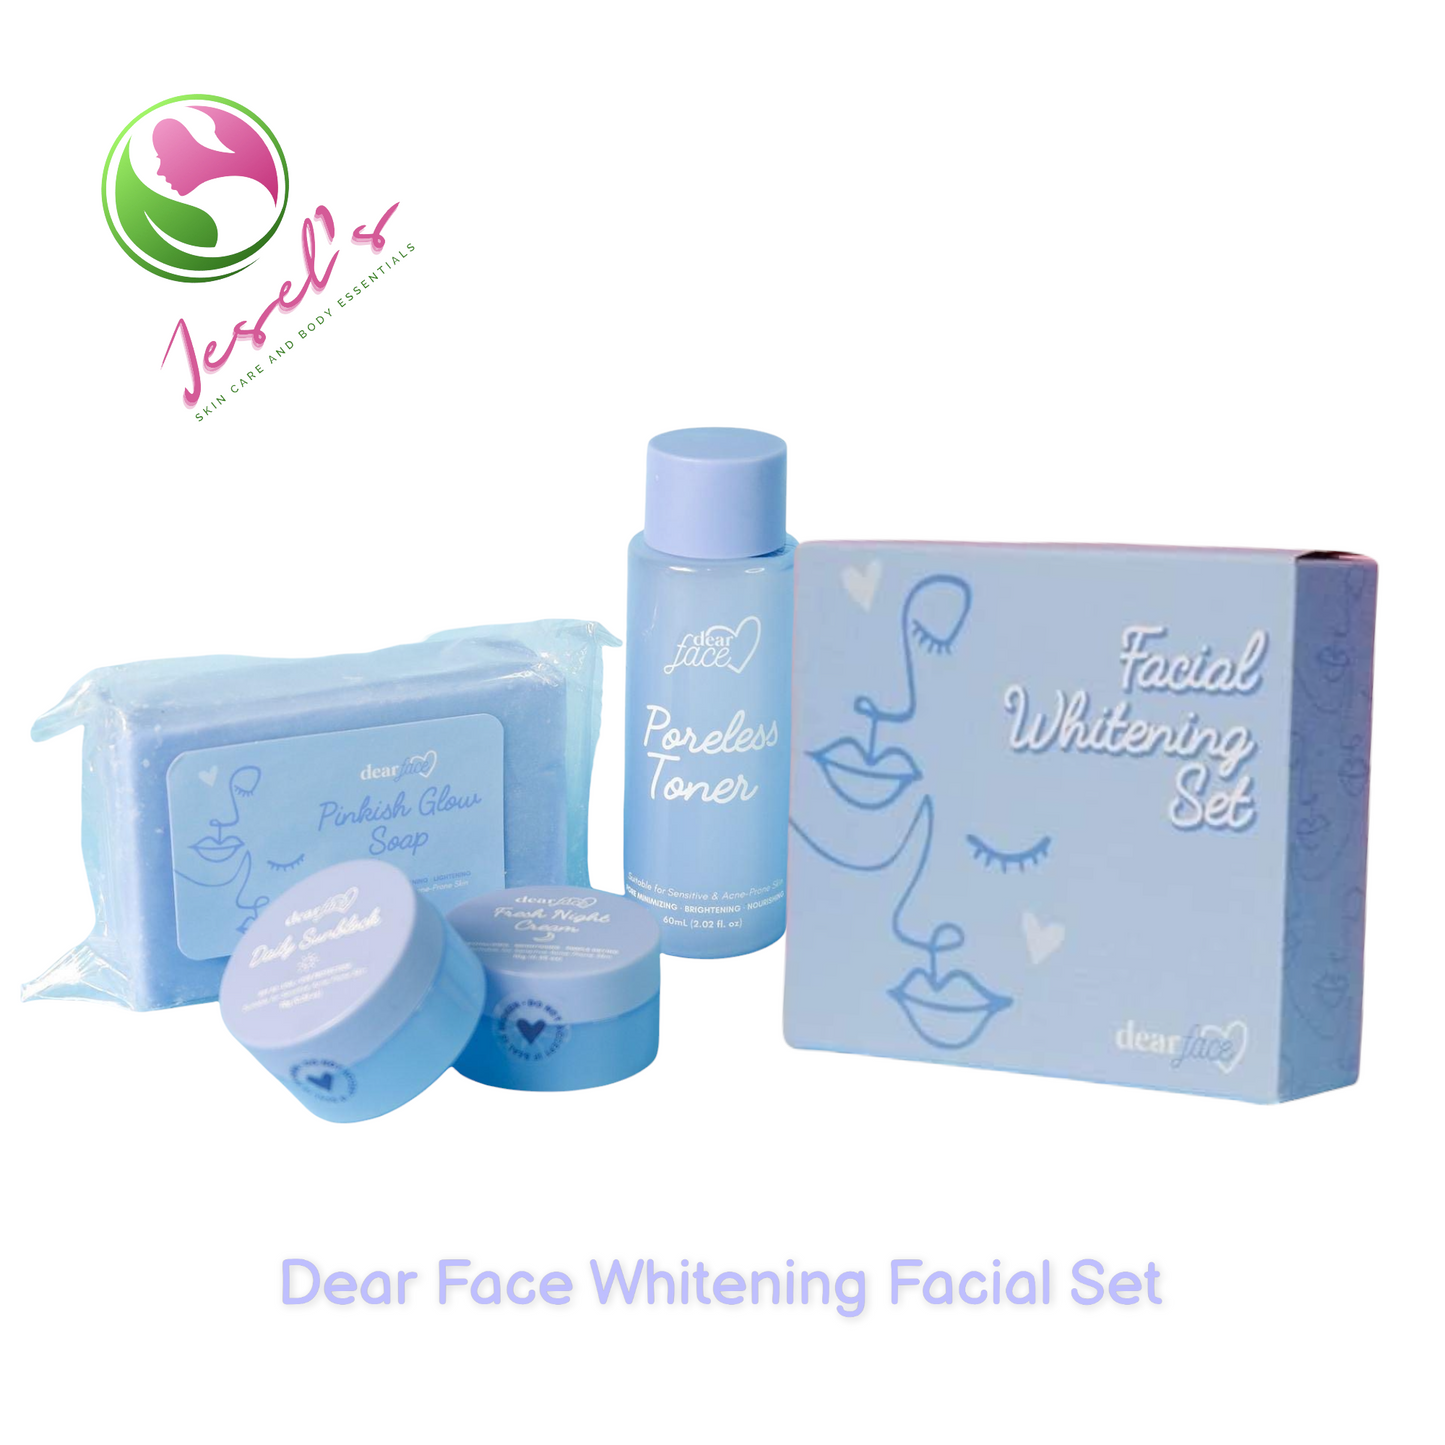 Dear face Whitening Facial Set